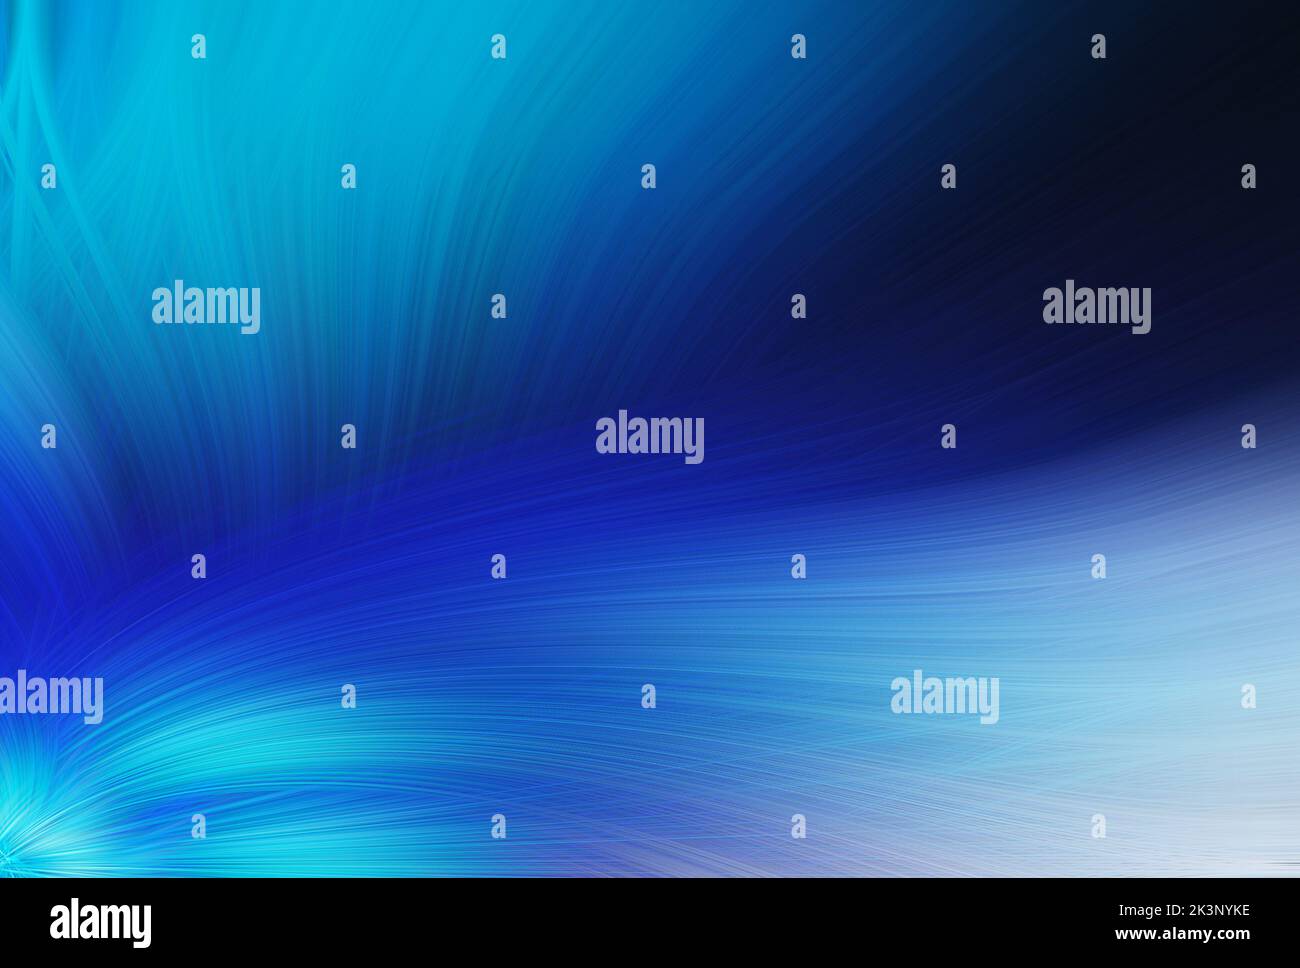 Schöner abstrakter blauer Hintergrund geeignet für Desktop-Wallpaper, Website-Hintergrund, Social Media, Illustration, Banner, Poster. Stockfoto